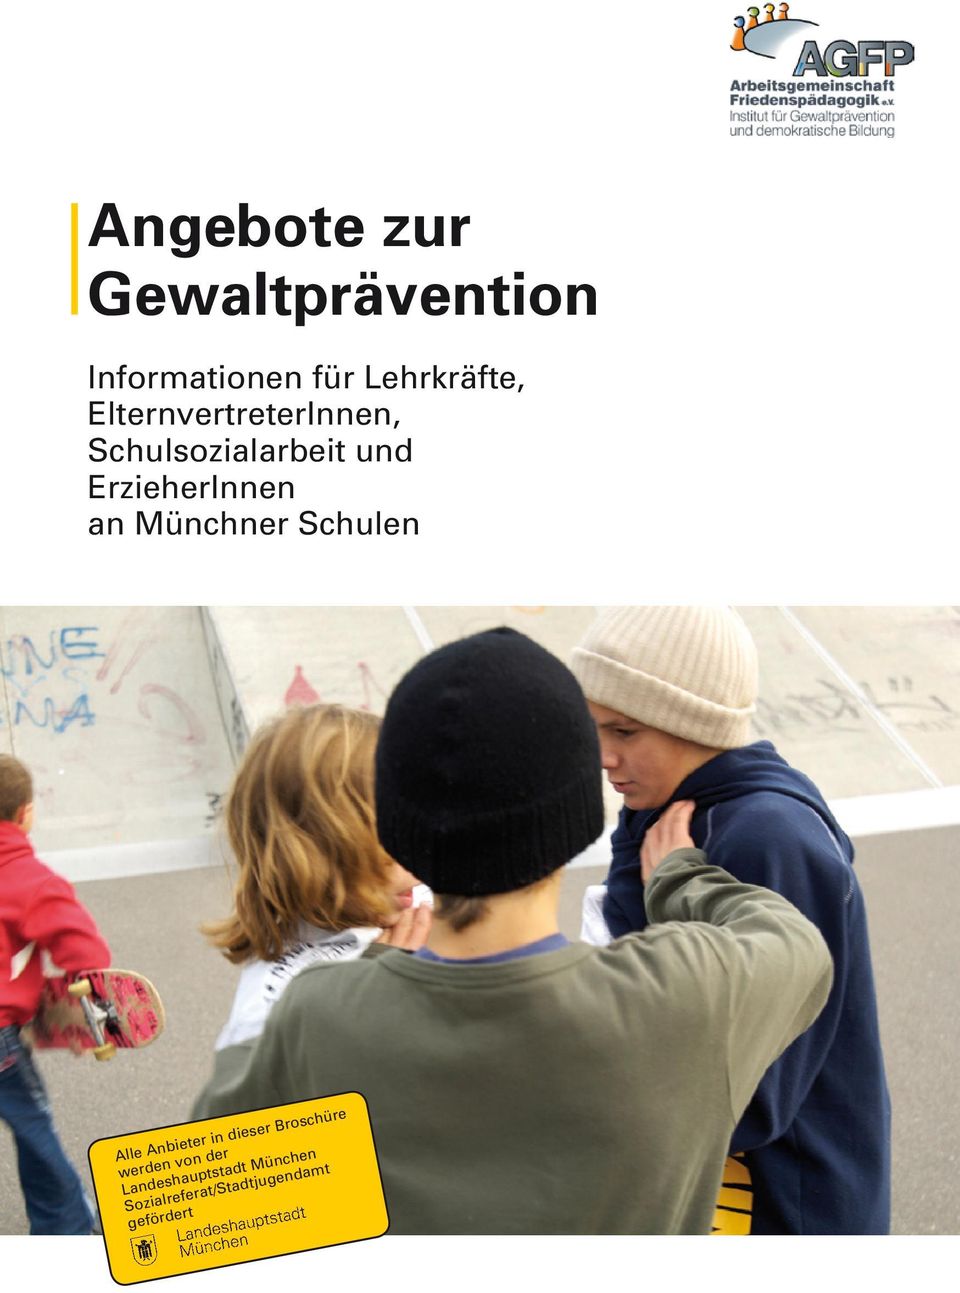 Münchner Schulen Alle Anbieter in dieser Broschüre werden von